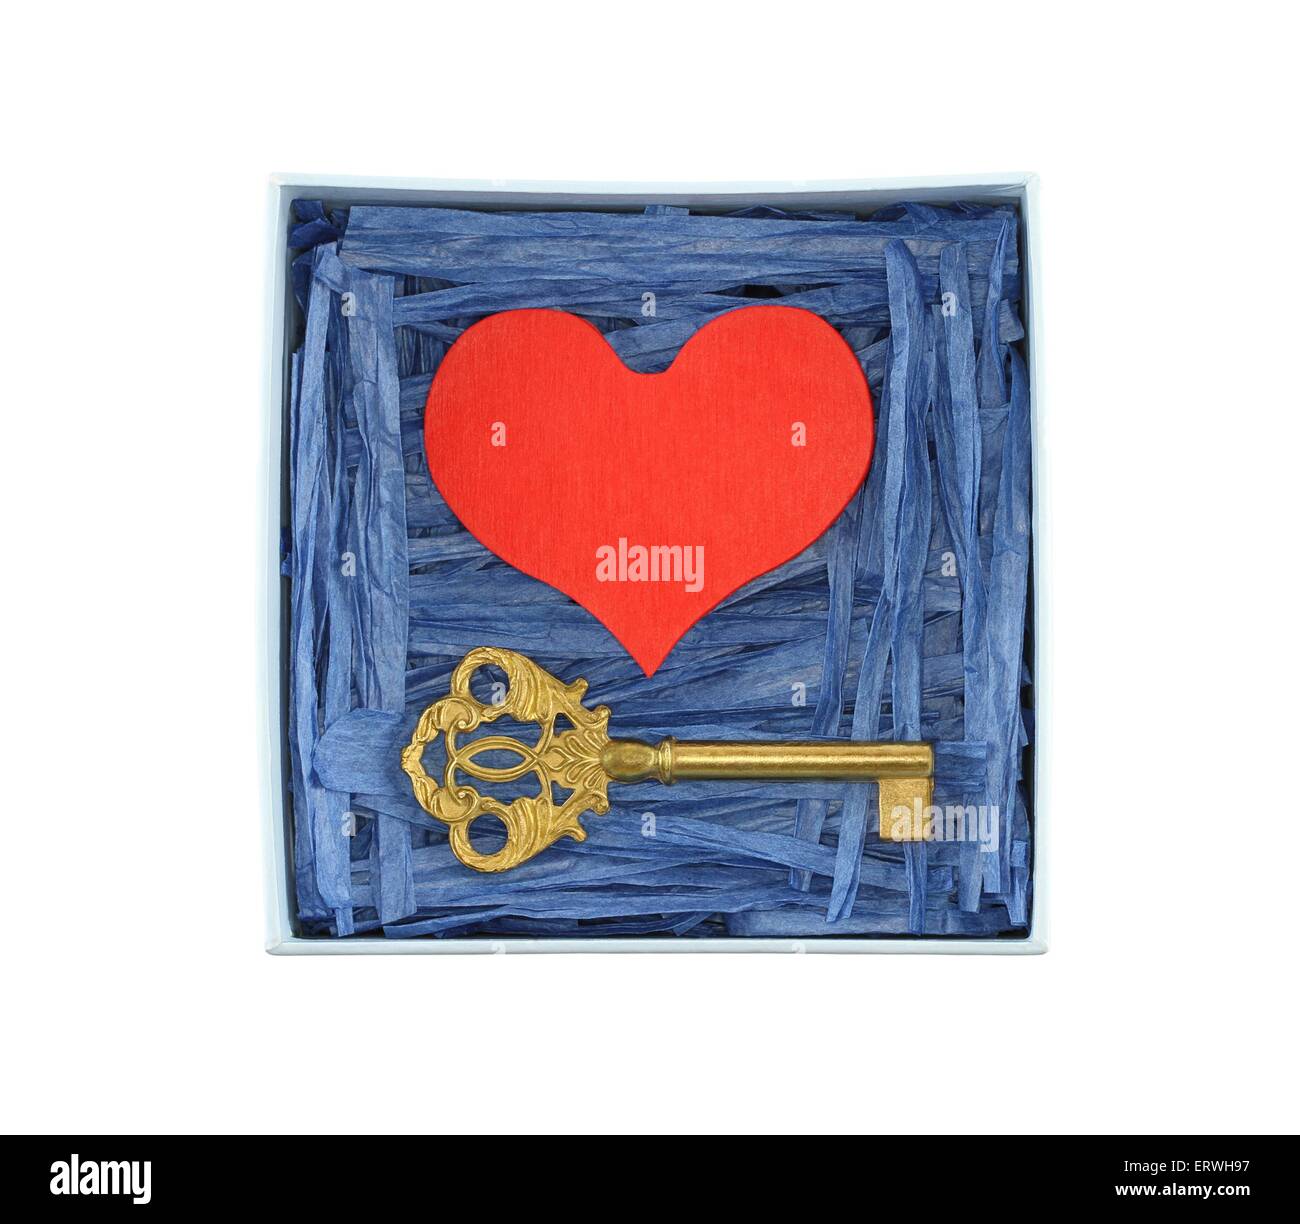 Corazón de madera pintadas de rojo y bronce clave encerrada con papel azul tiras de rafia en el cuadro azul claro aislado sobre fondo blanco. Foto de stock